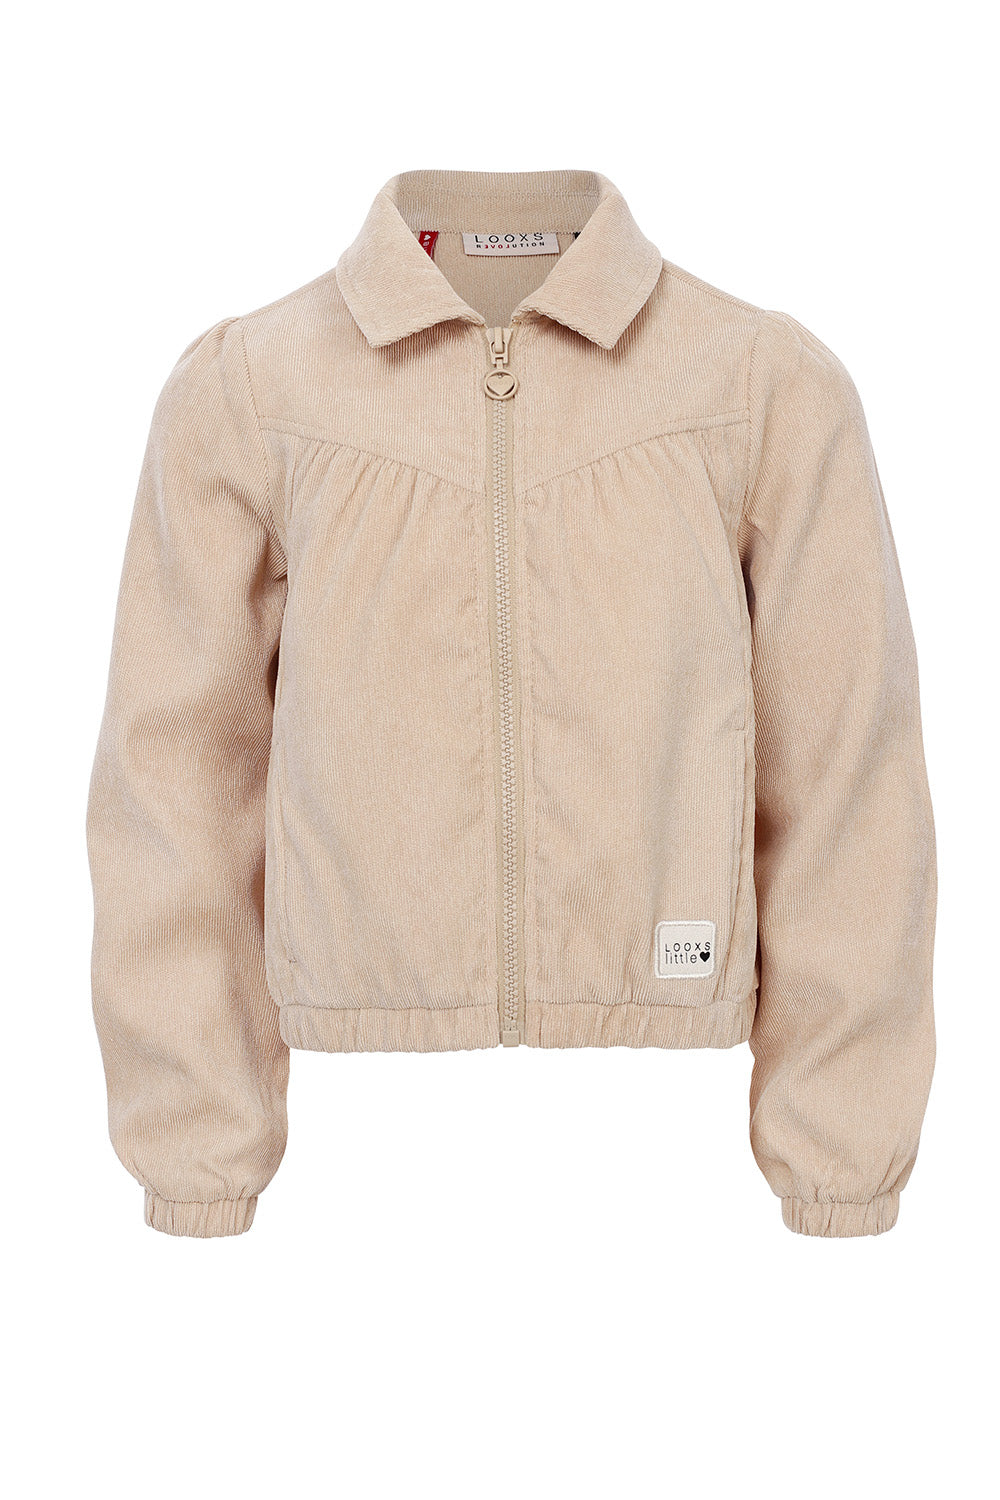 Meisjes Jacket van LOOXS Little in de kleur Bisquit in maat 128.